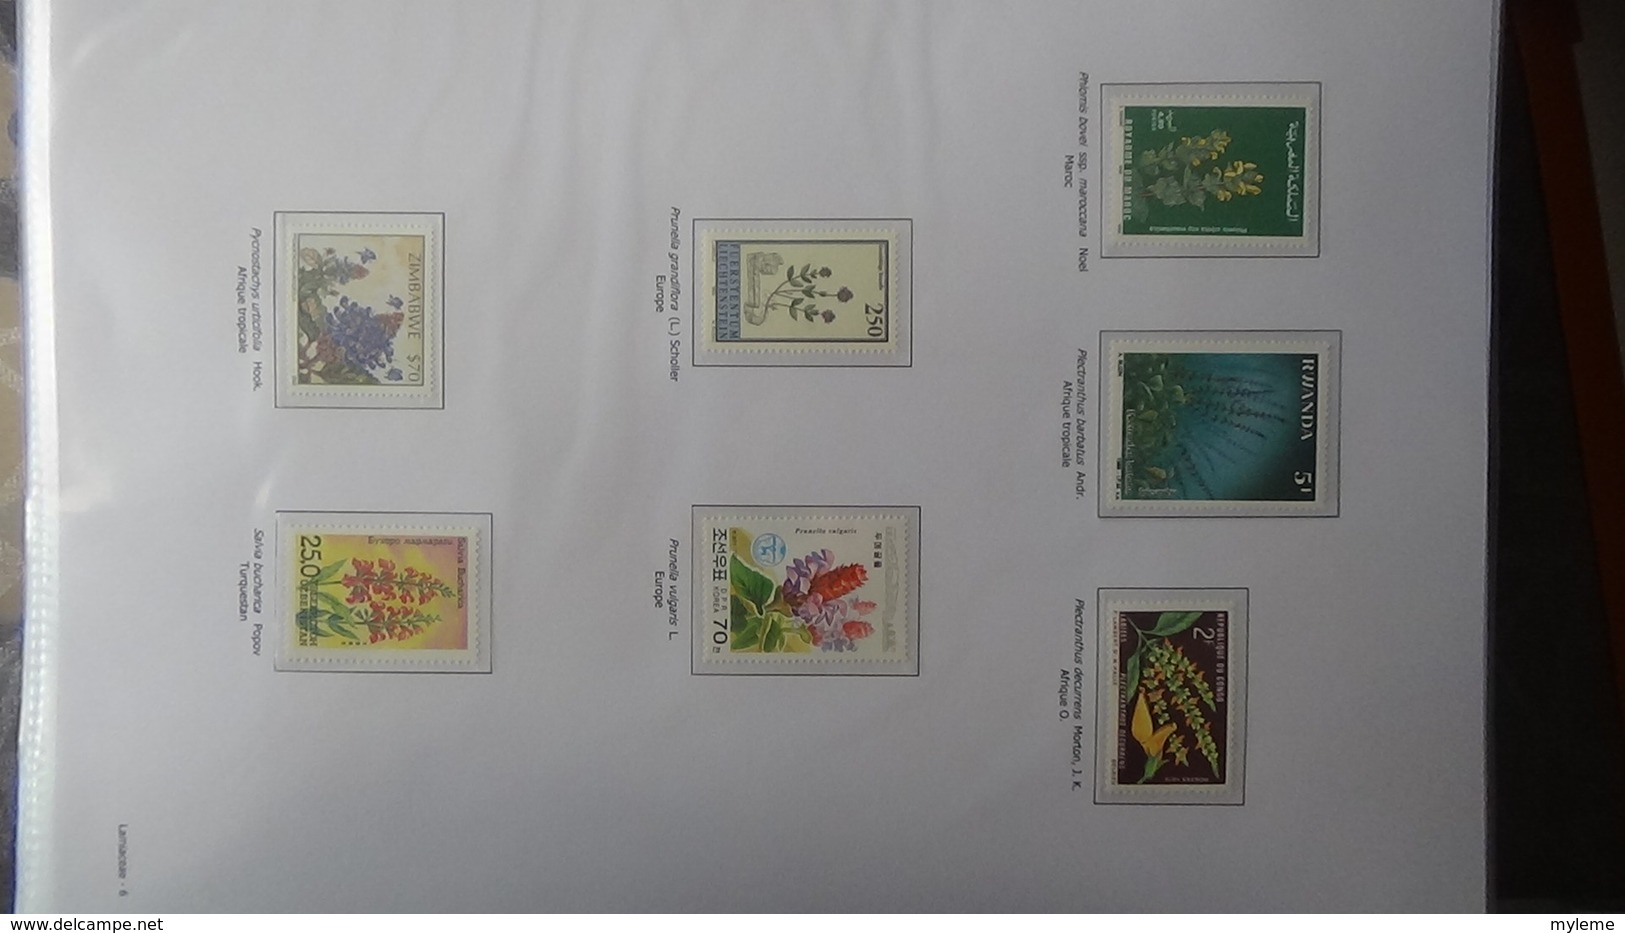 Dispersion d'une grosse collection thématique dont les Plantes Angiospermes Tome 6 . A saisir !!!